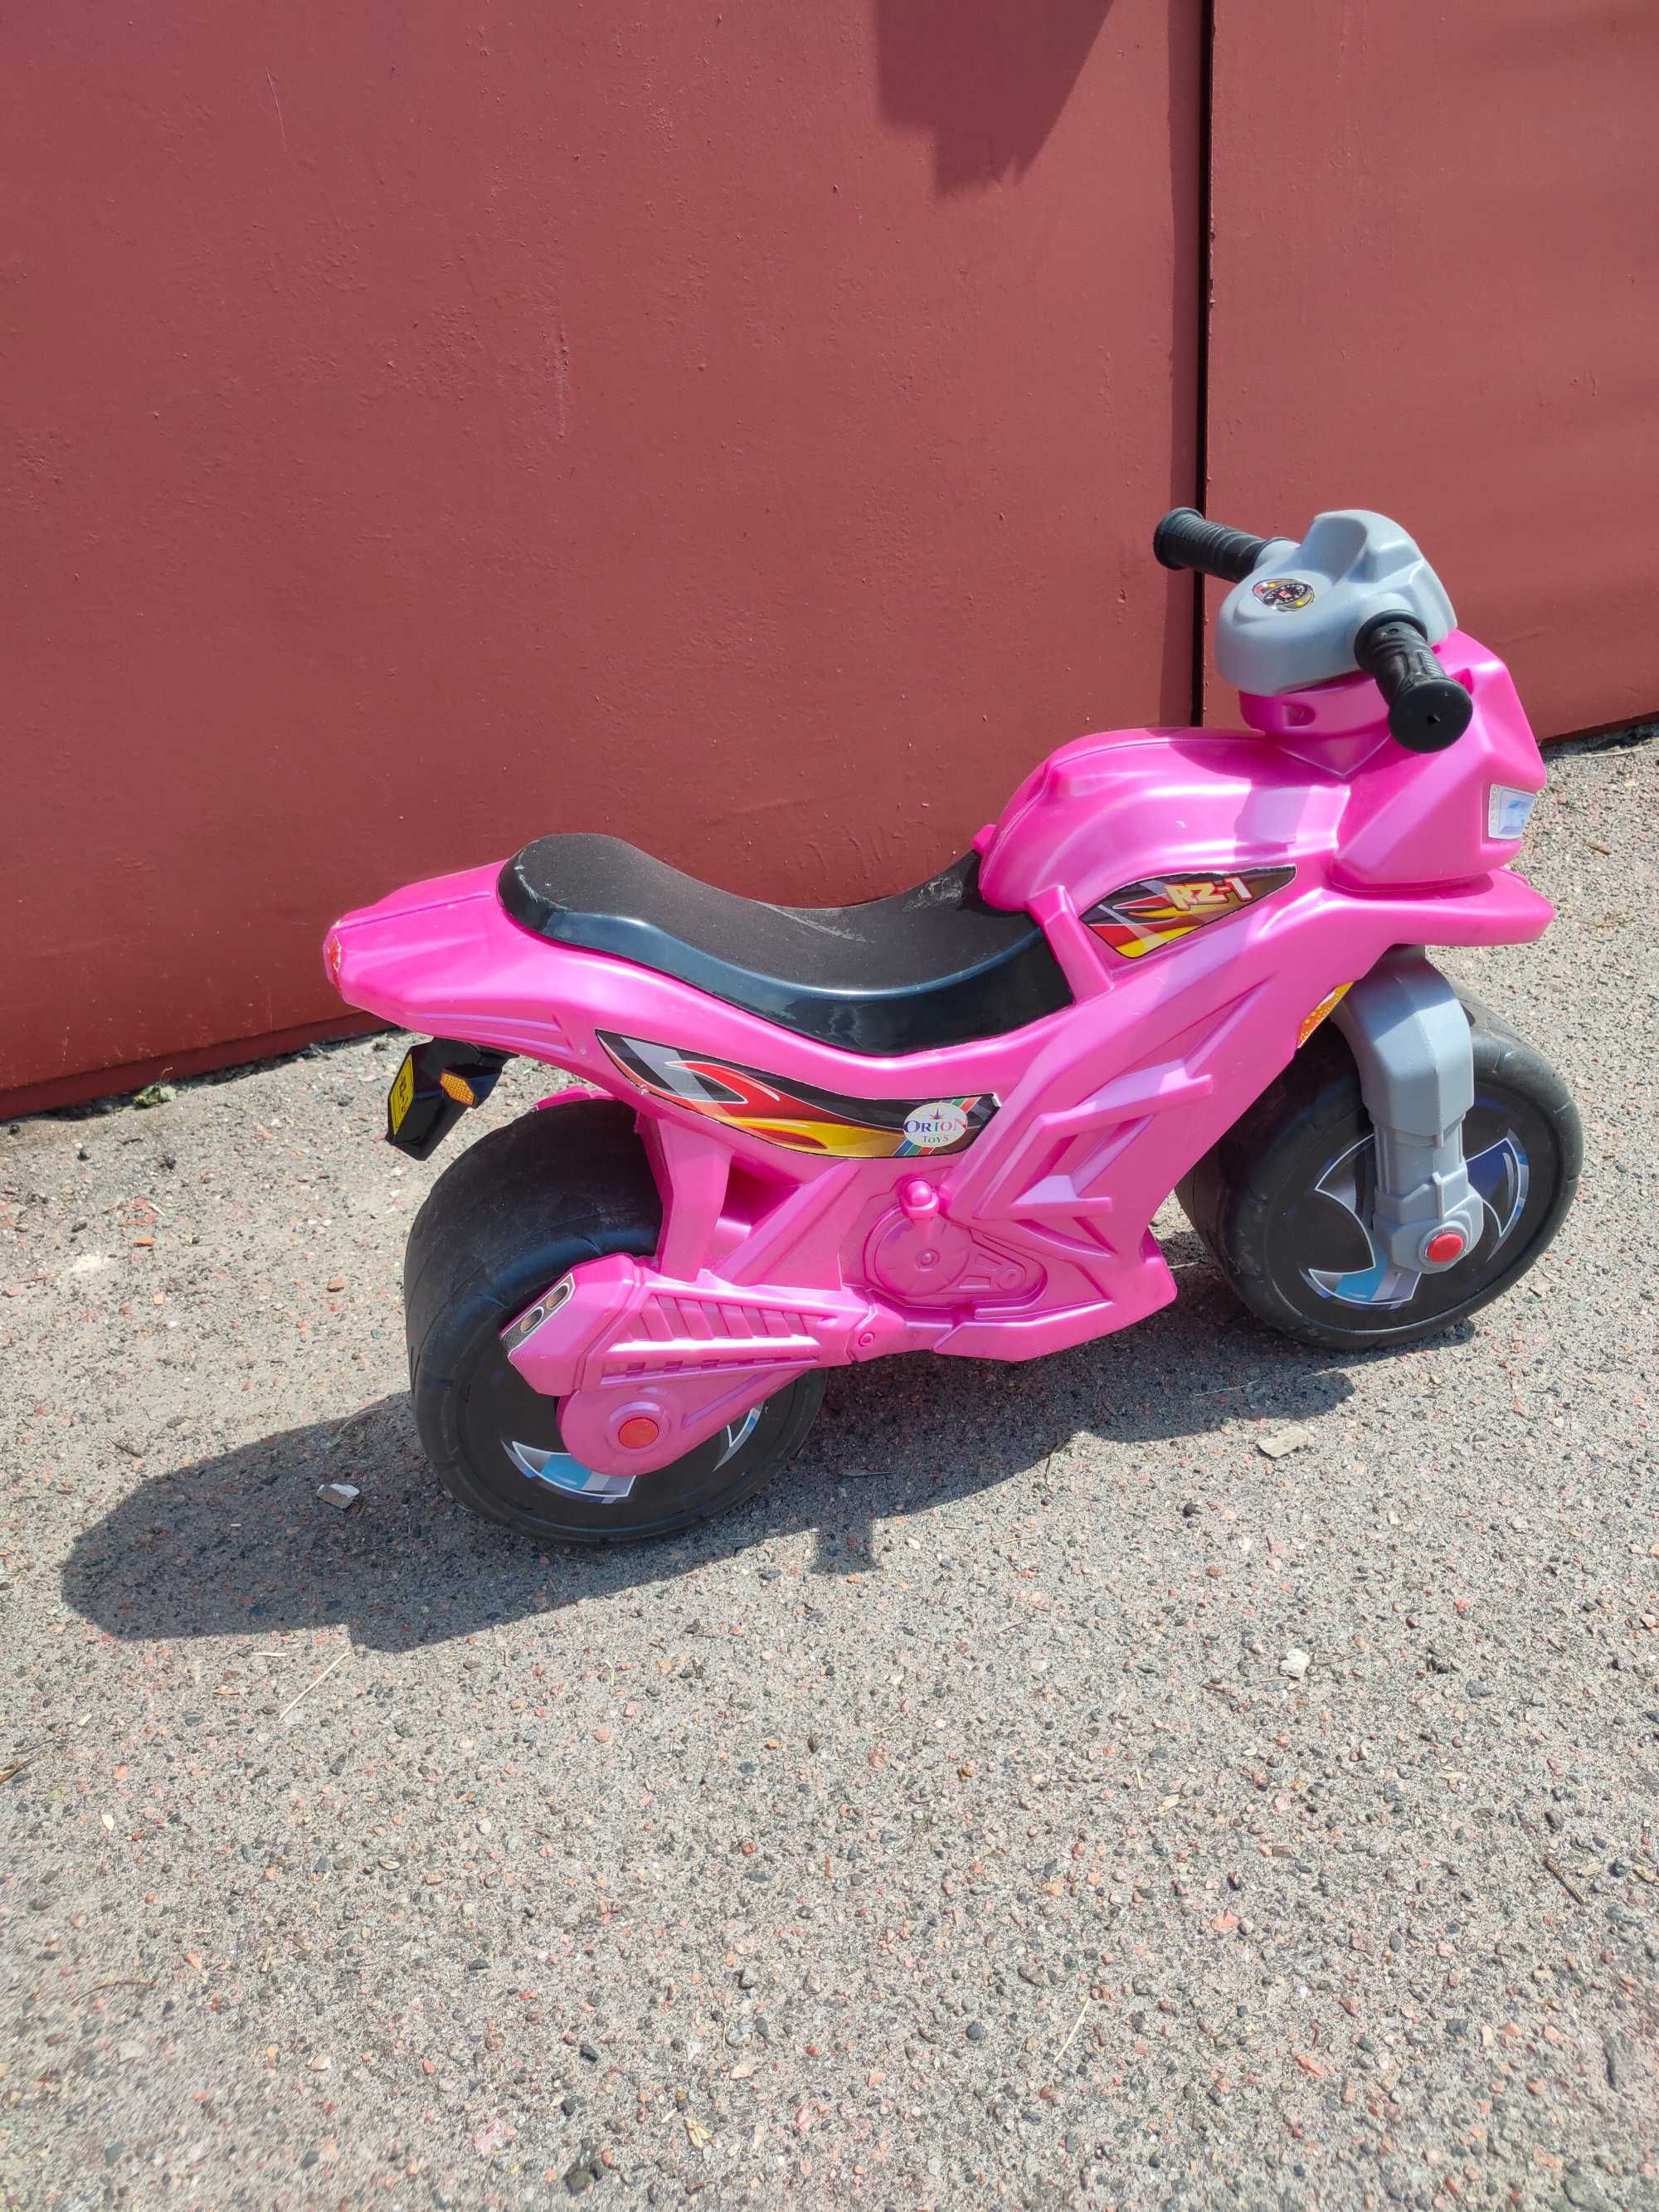 Біговіл-мотоцикл для дітей дошкільного віку .